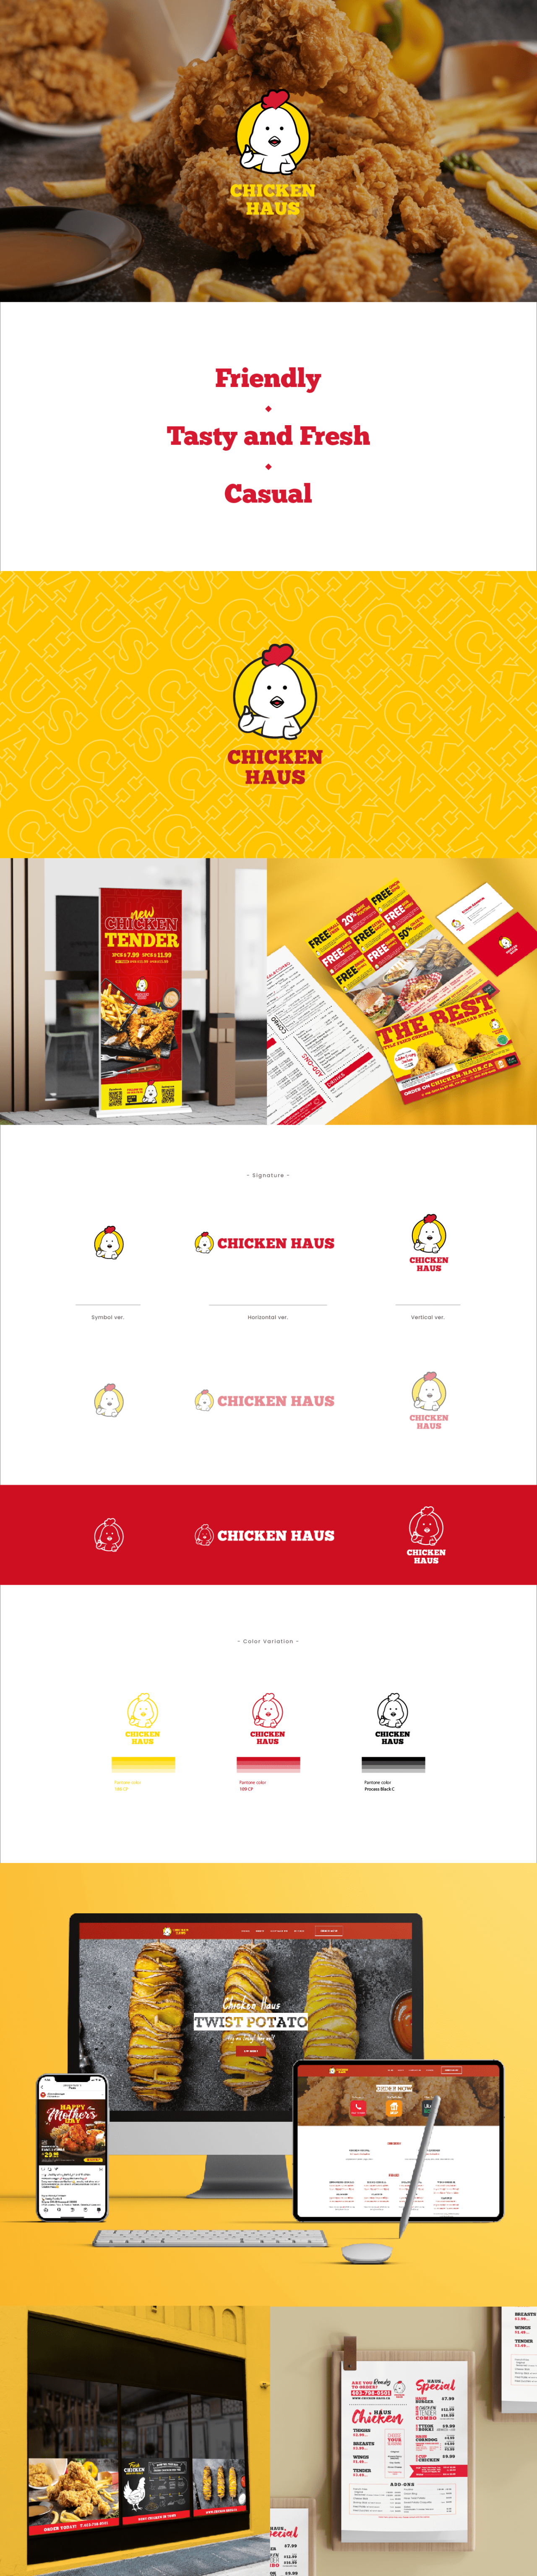 portfolio page_Chicken Haus-min